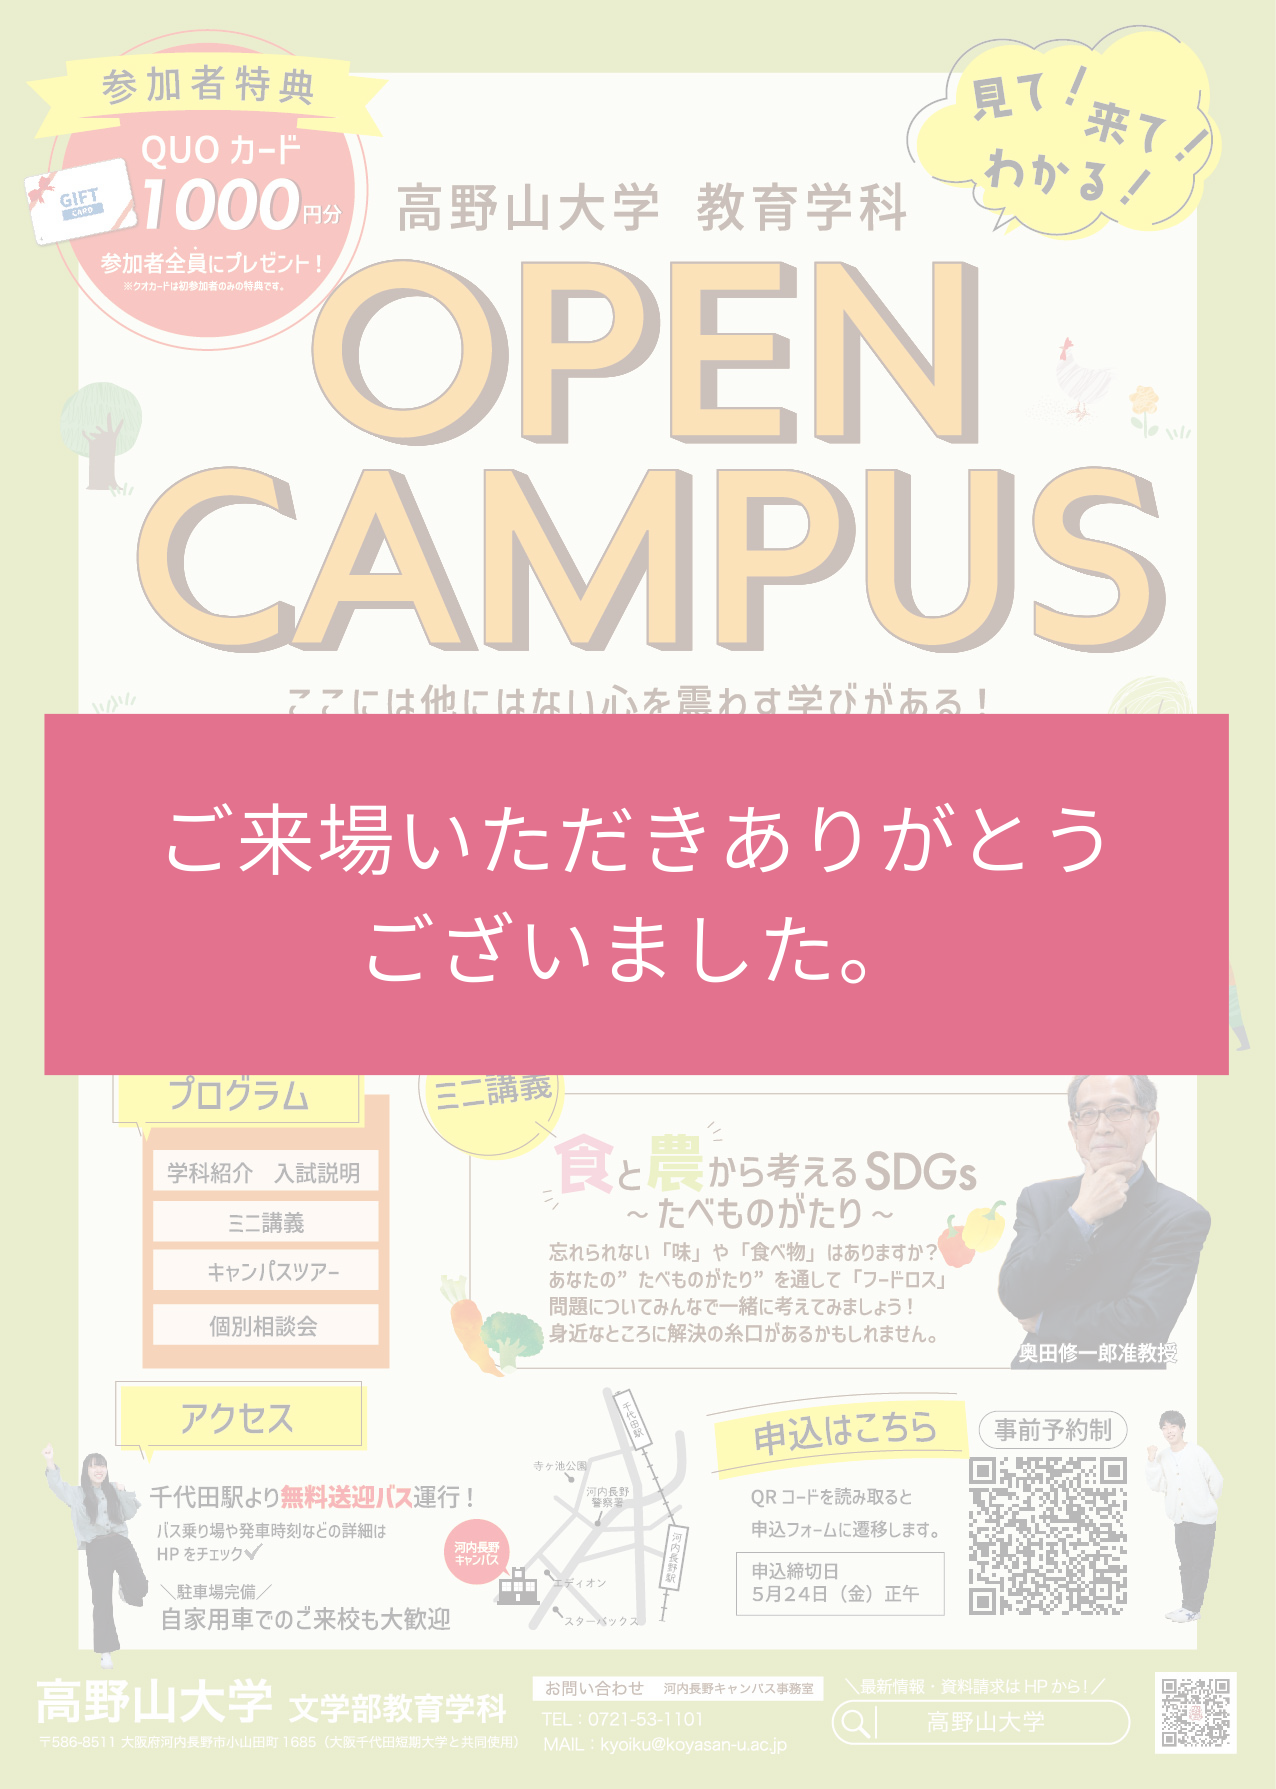 【終了しました】5/26(日)教育学科オープンキャンパス